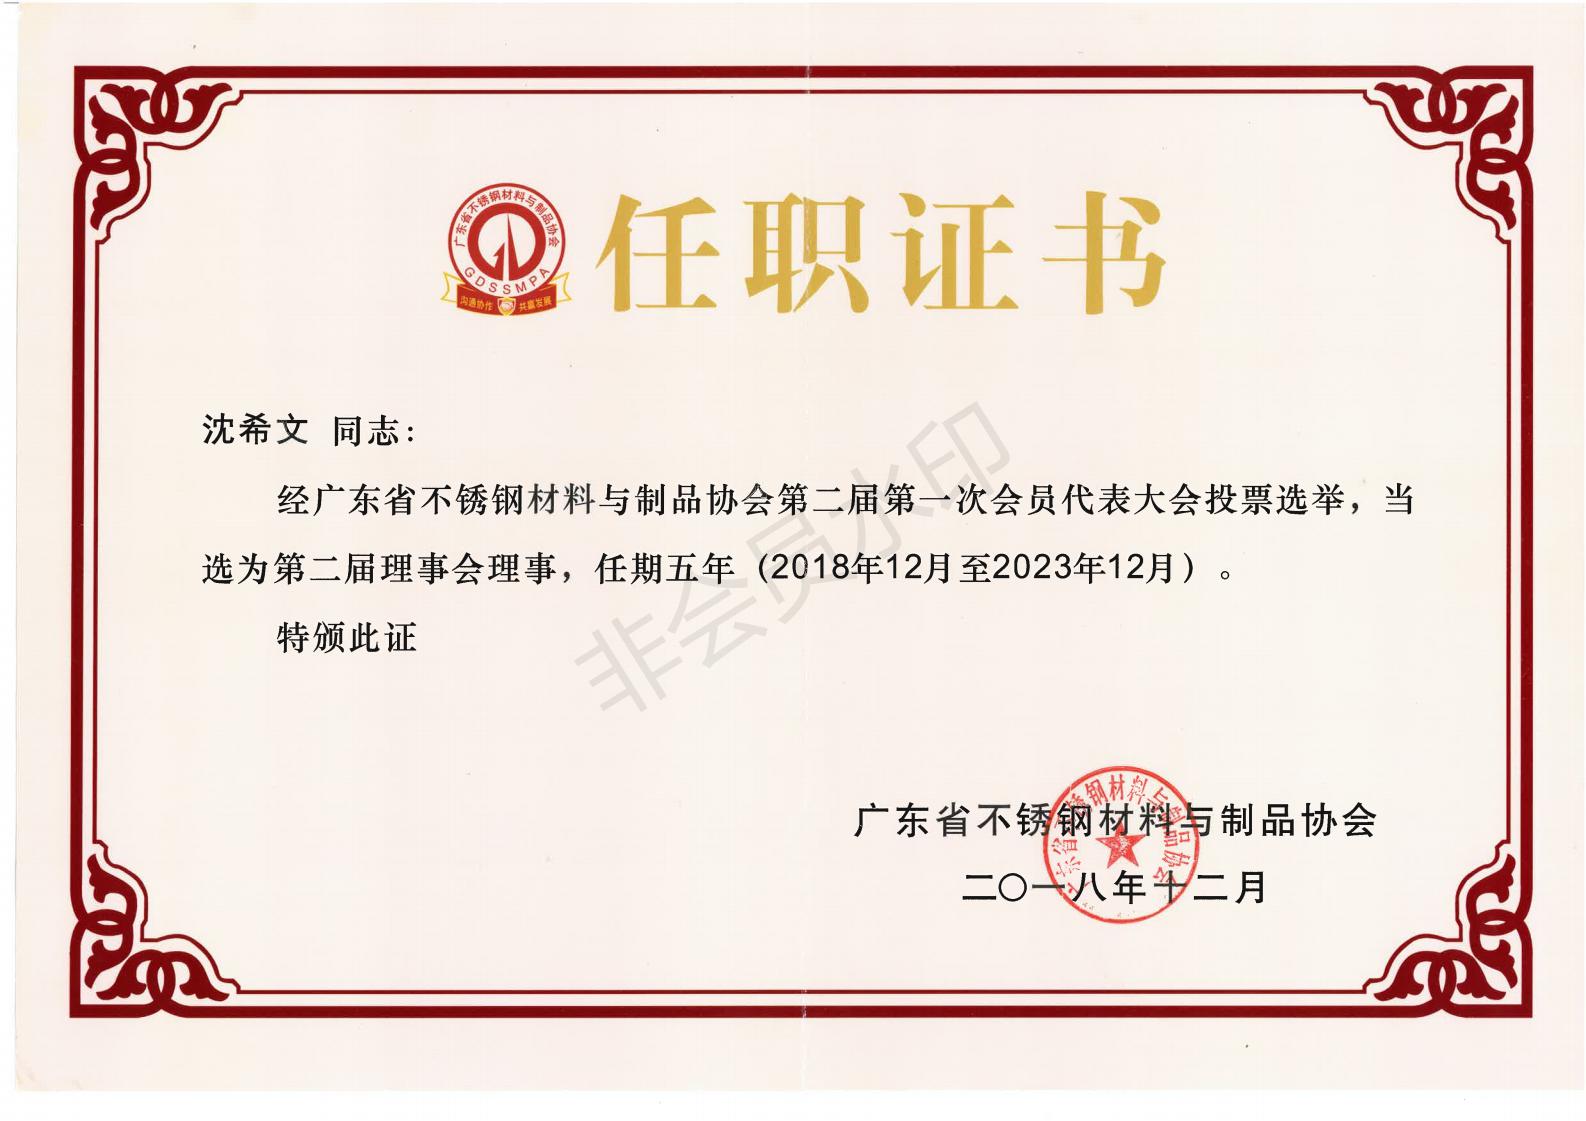 祝賀我司沈總經理當選廣東省不銹鋼材料與制品協會理事會理事